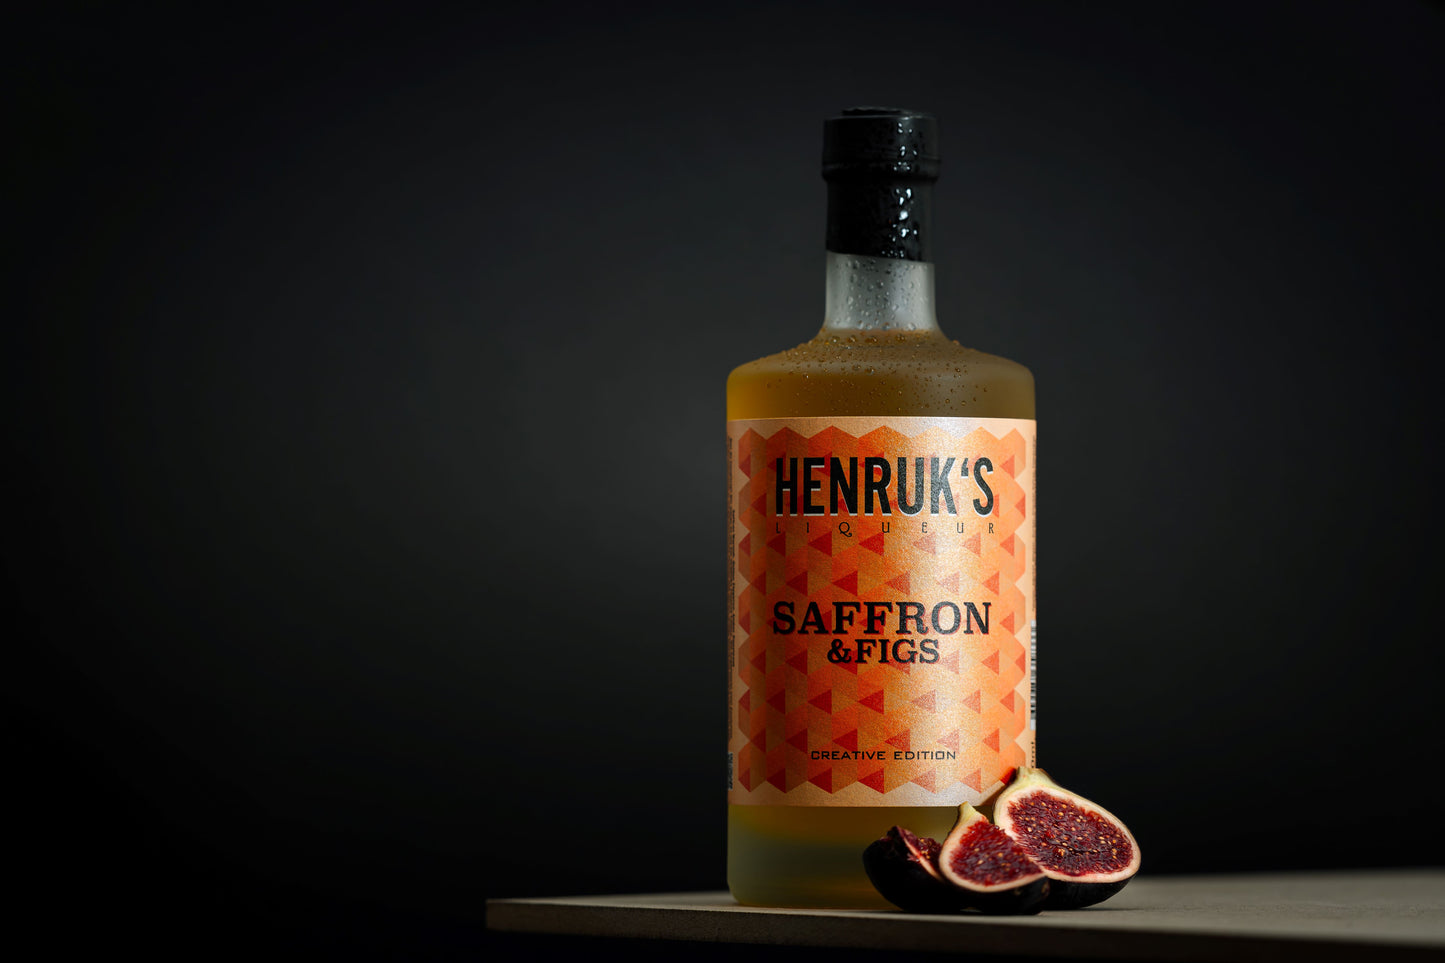 HENRUK's saffron & figs "creative edition"